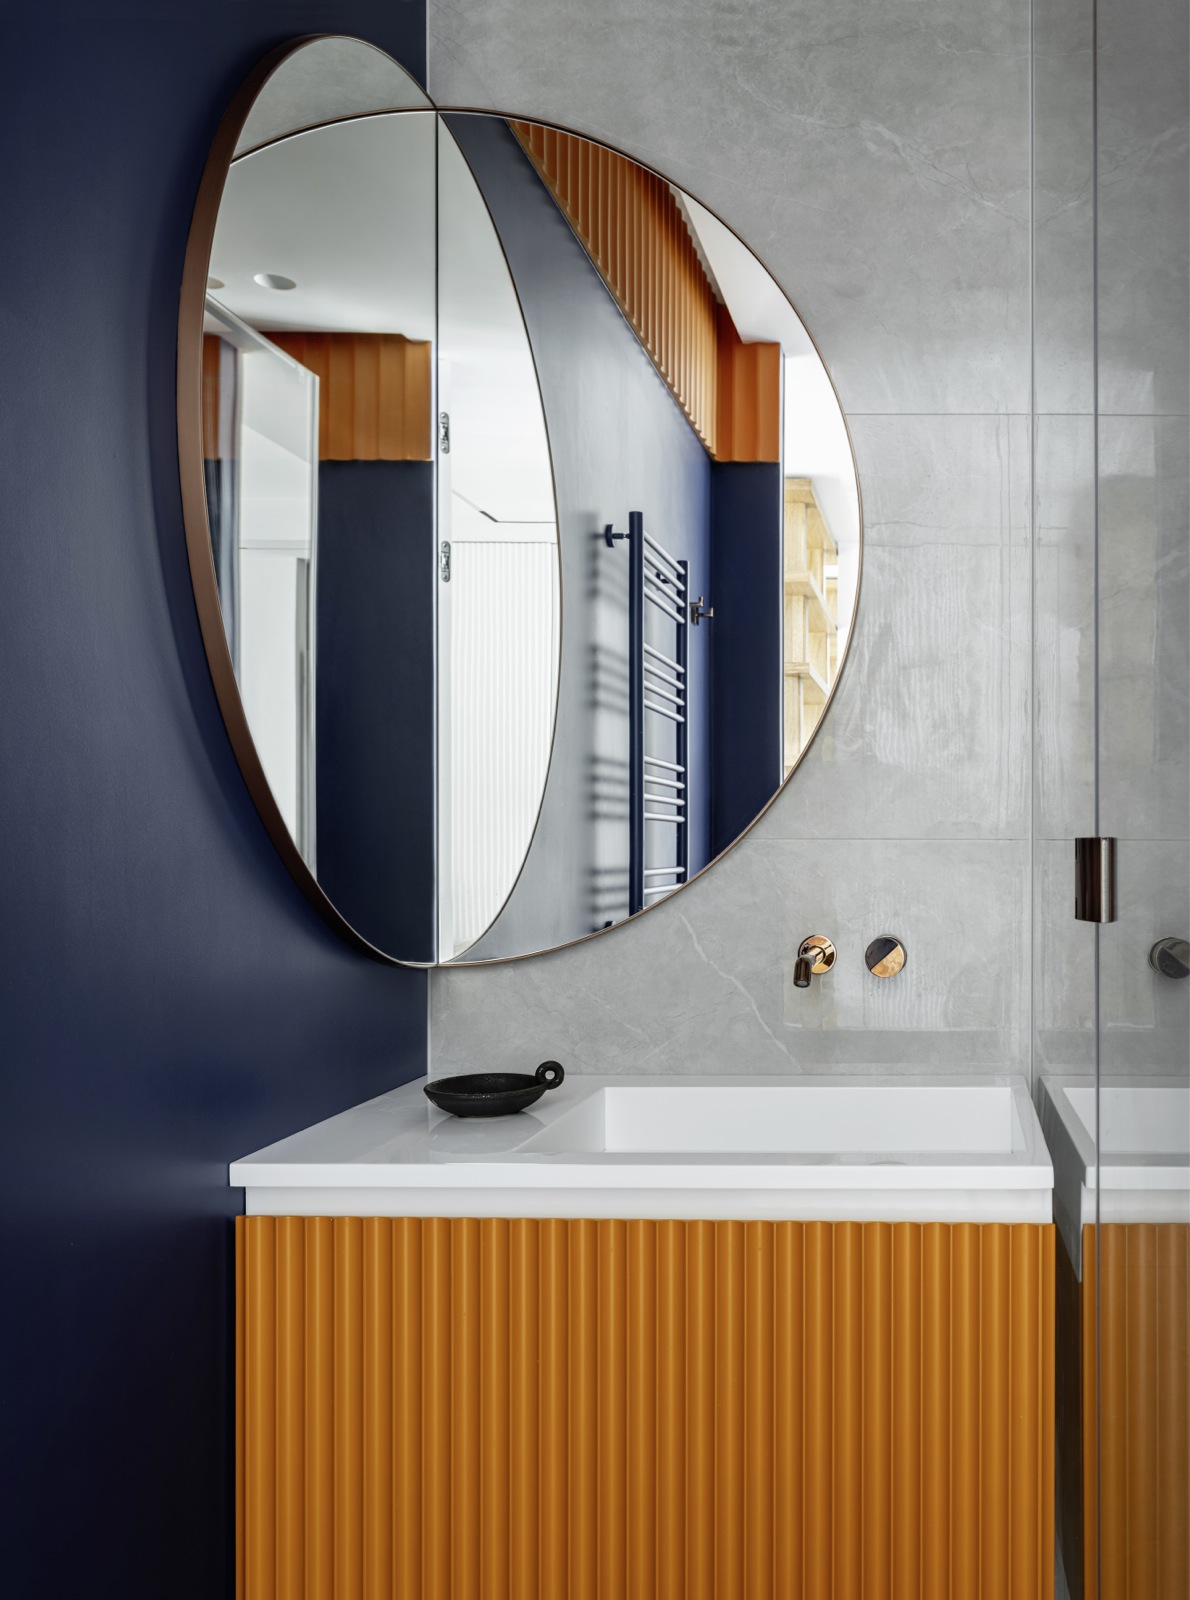 Tấm gương siêu độc đáo lắp đặt ở góc vuông của phòng tắm cũng được sản xuất theo đơn đặt hàng của KTS.